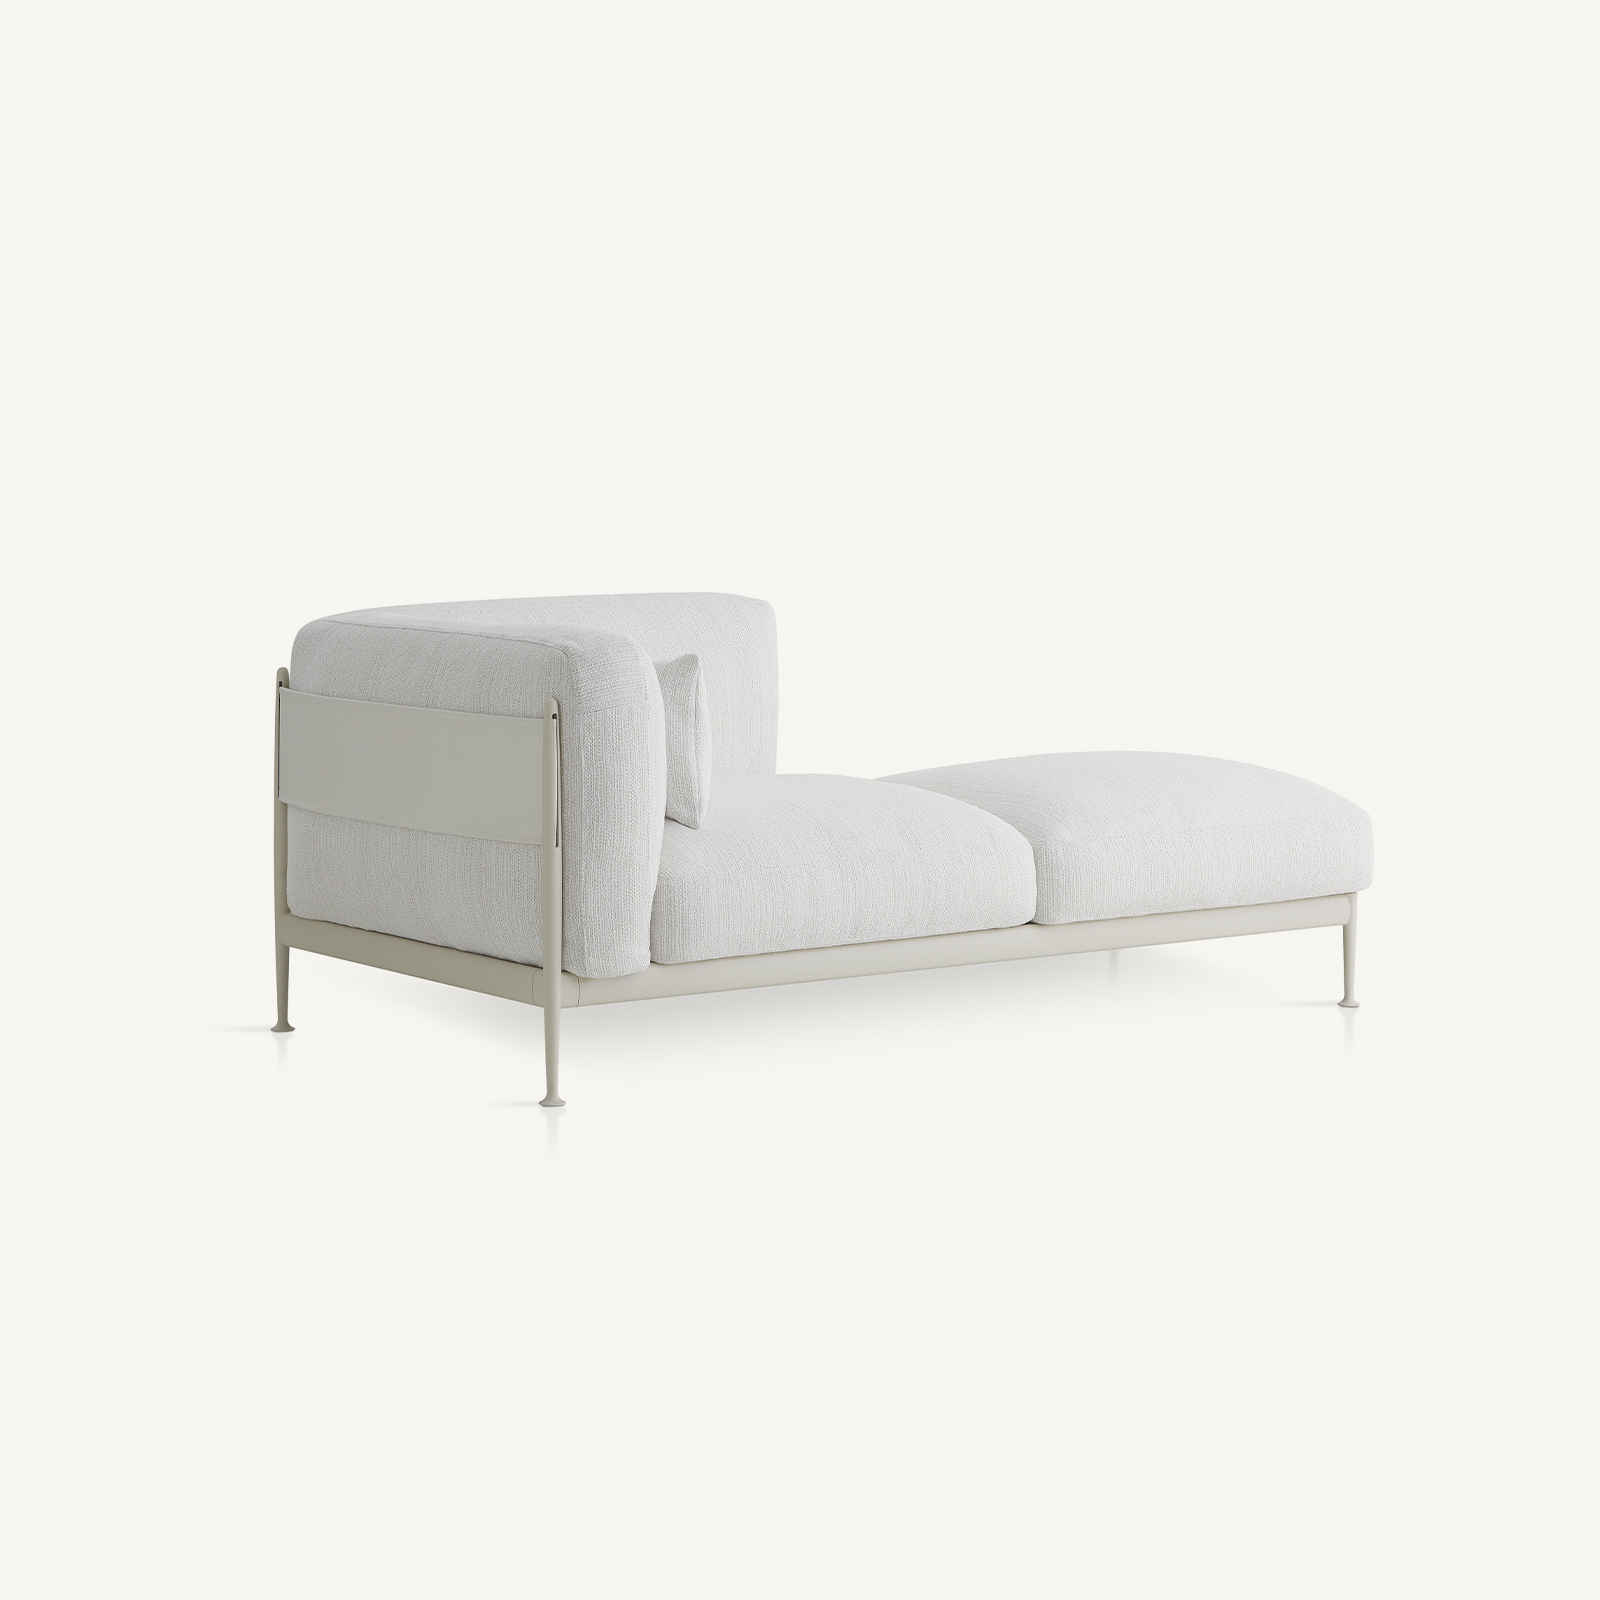 outdoor kollektion - sofas - rechtes modul sonnenliege obi